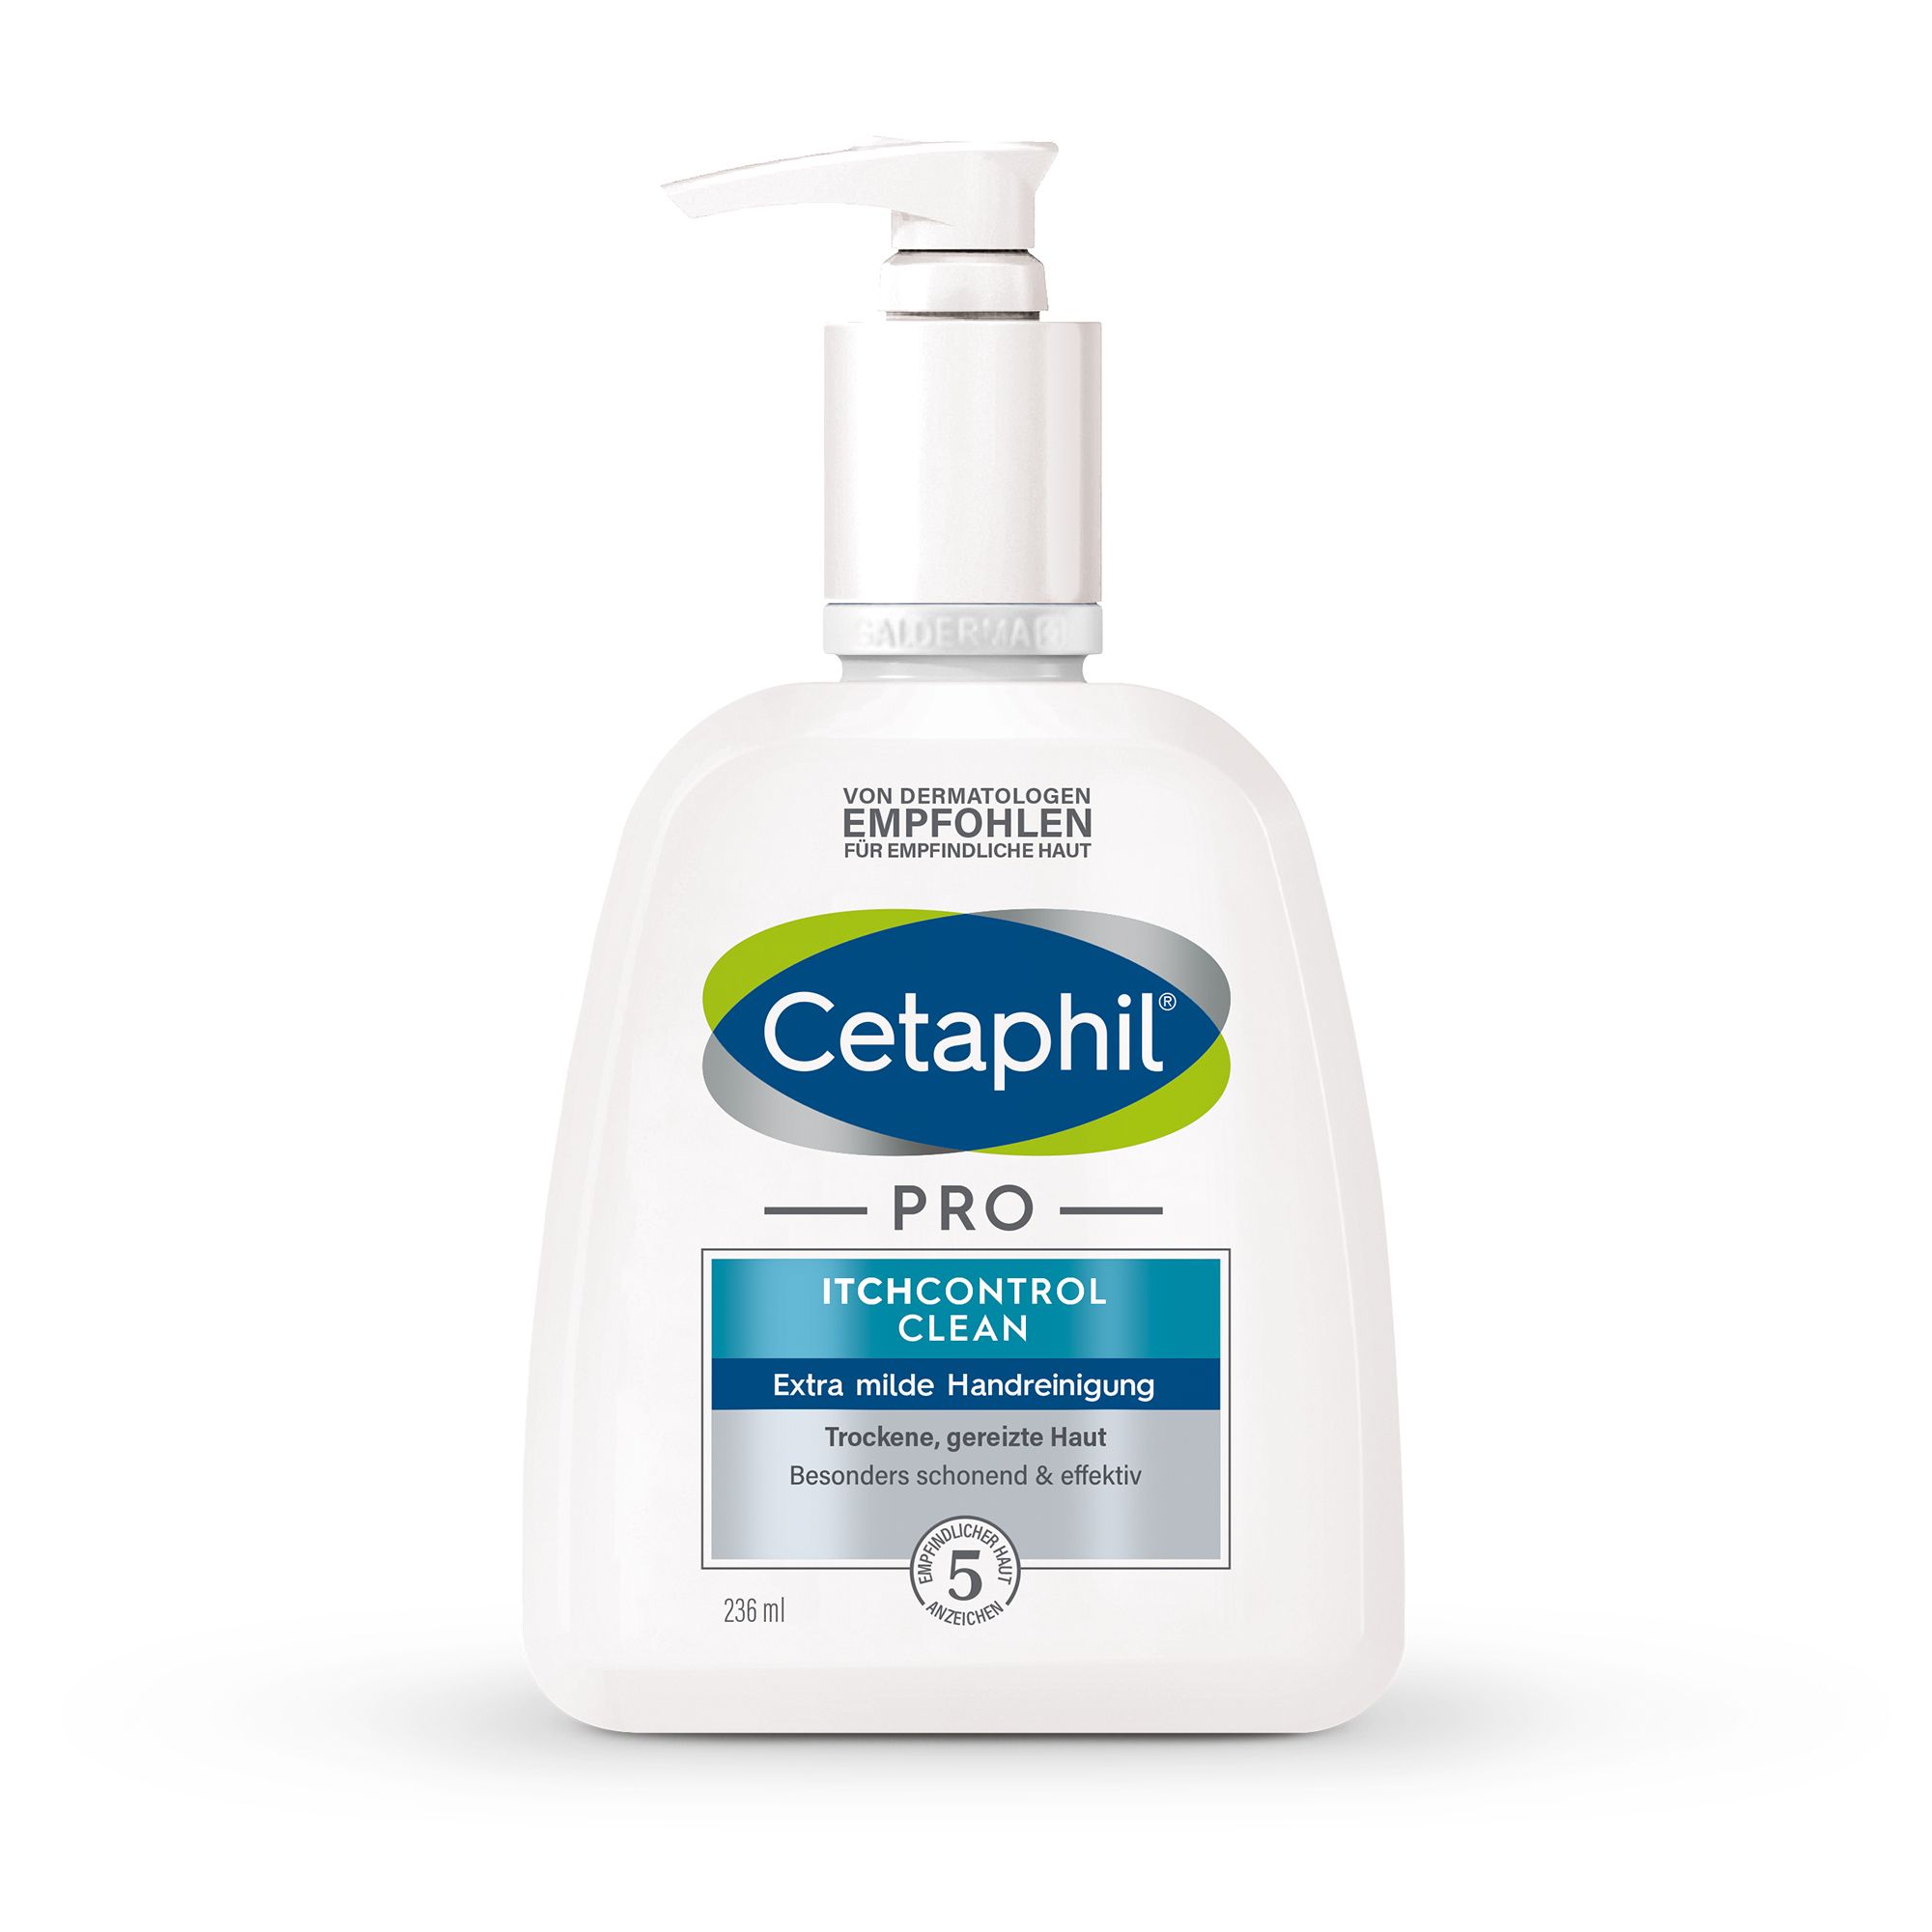 CETAPHIL PRO ItchControl Clean Extra milde Handreinigung für strapazierte Hände